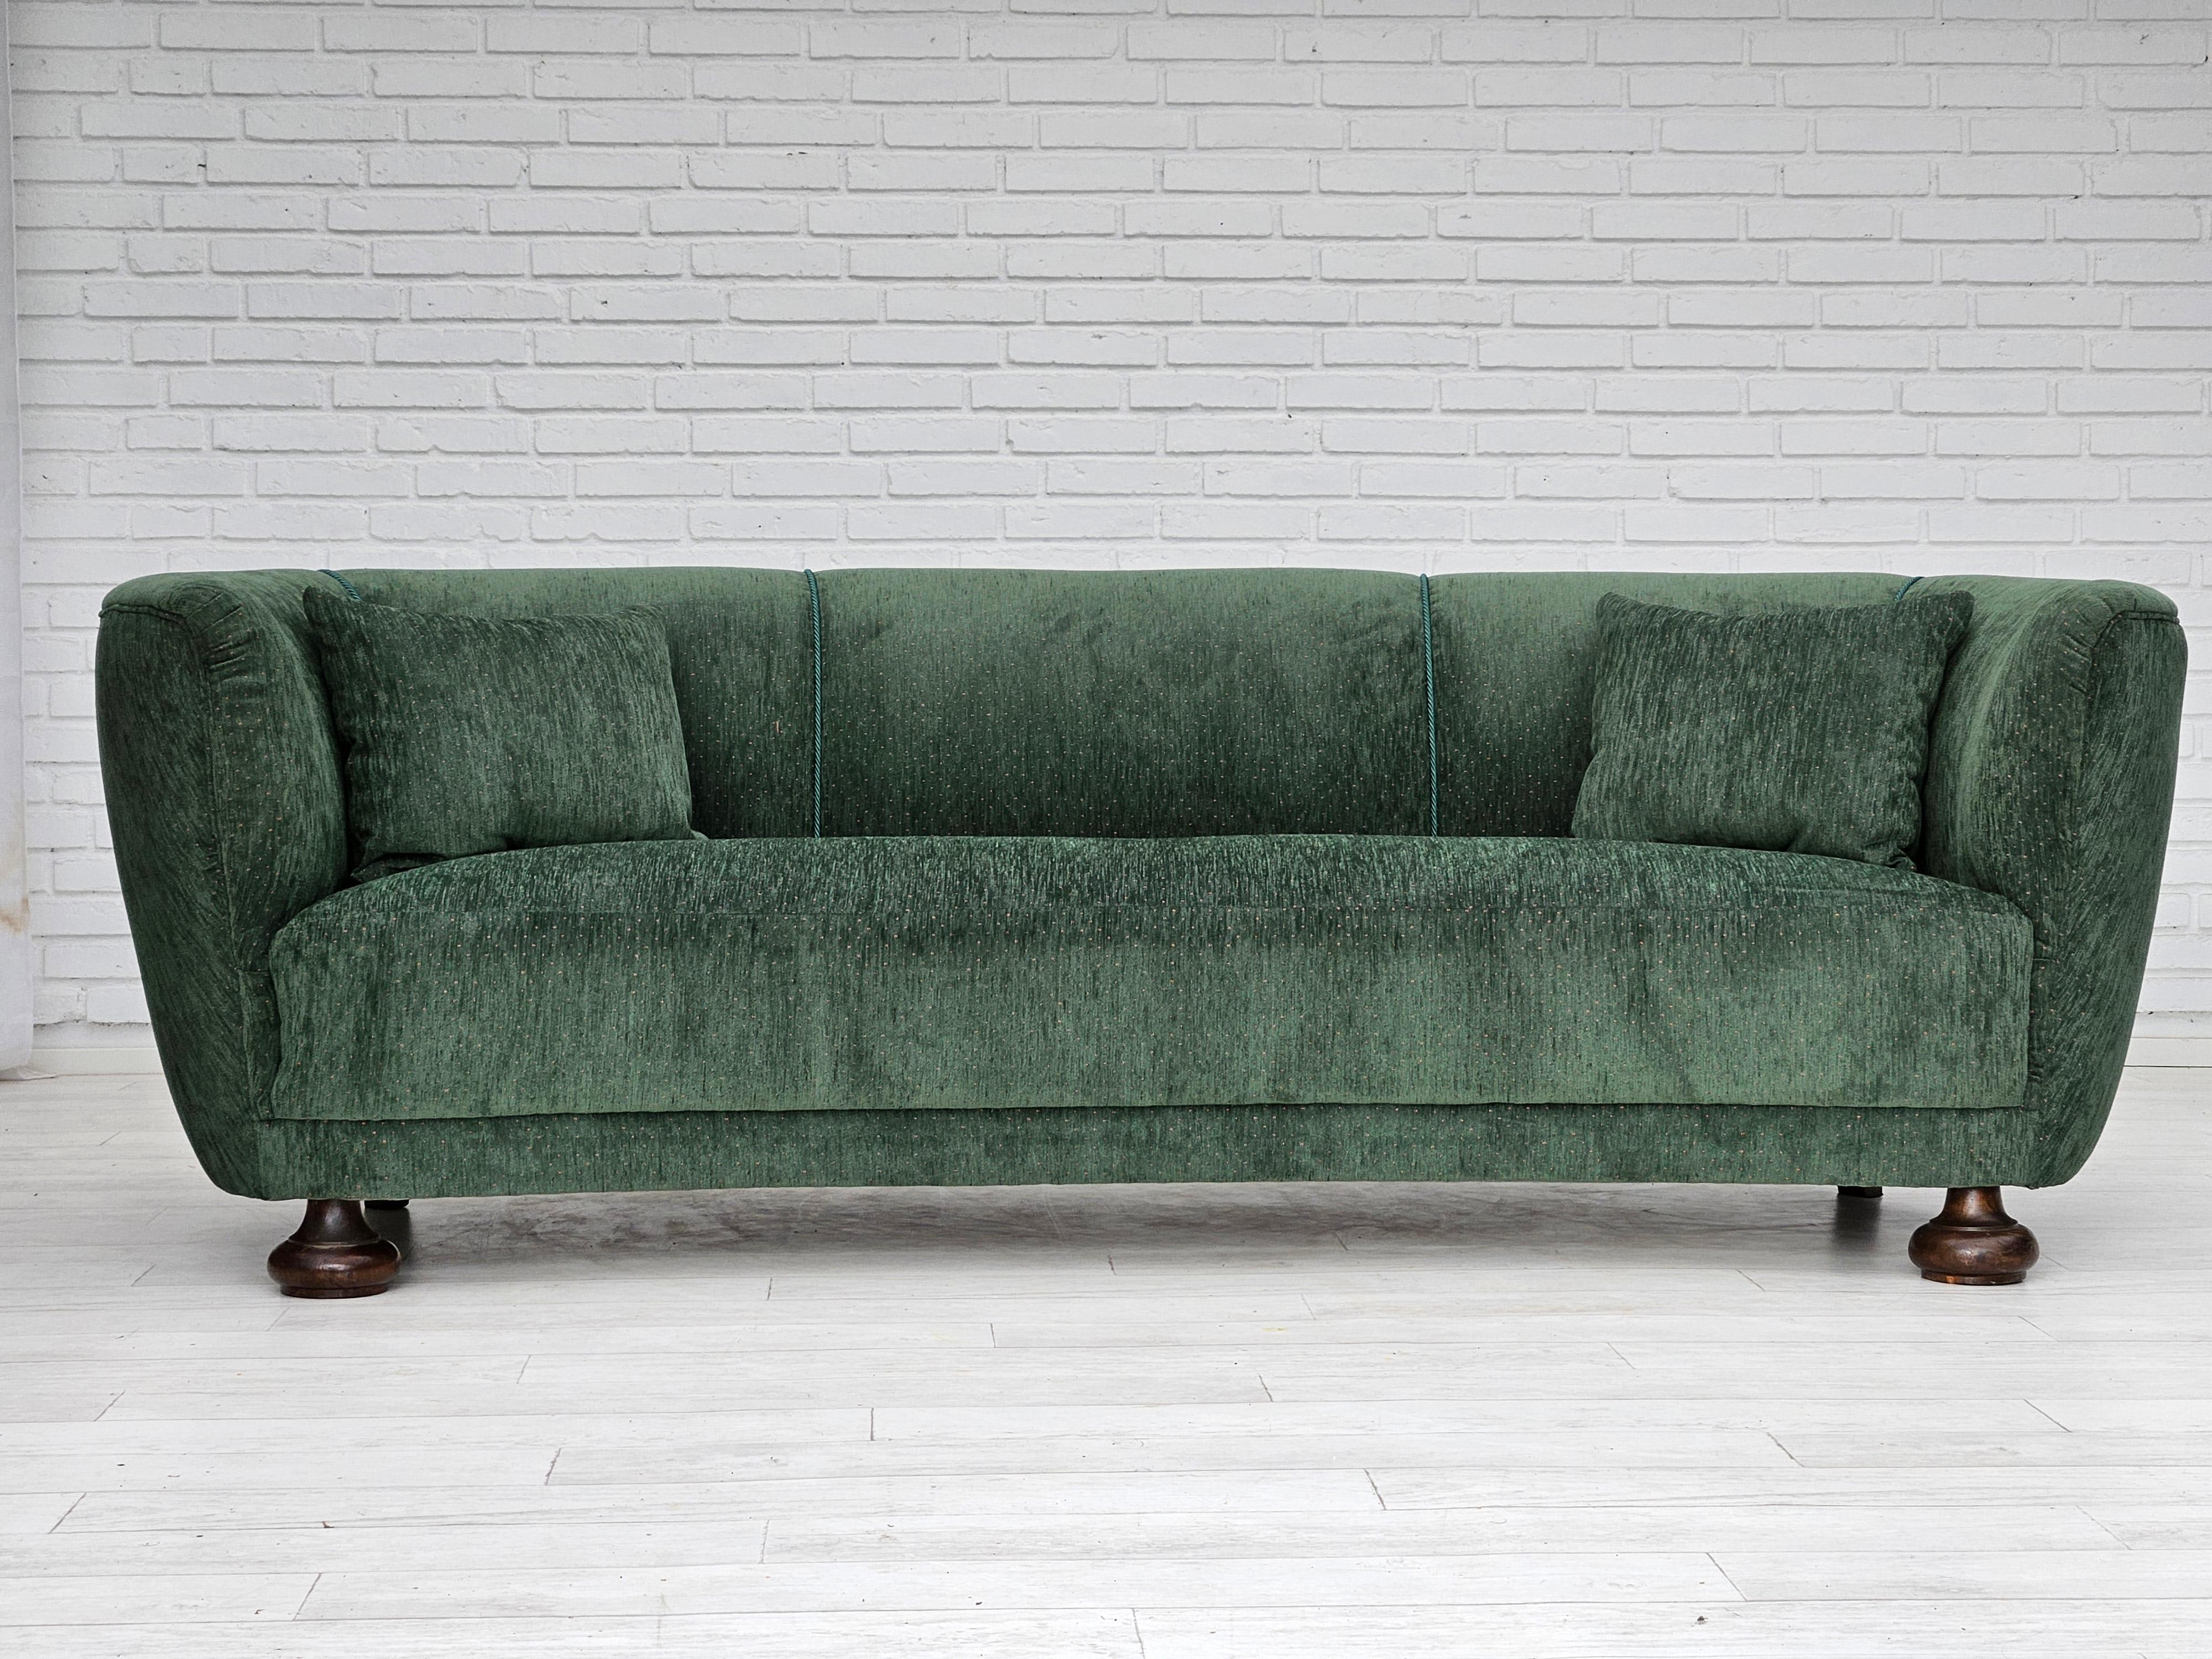 1960er Jahre, Dänisches Design. Aufgearbeitetes, neu gepolstertes 3-Sitzer-Sofa 